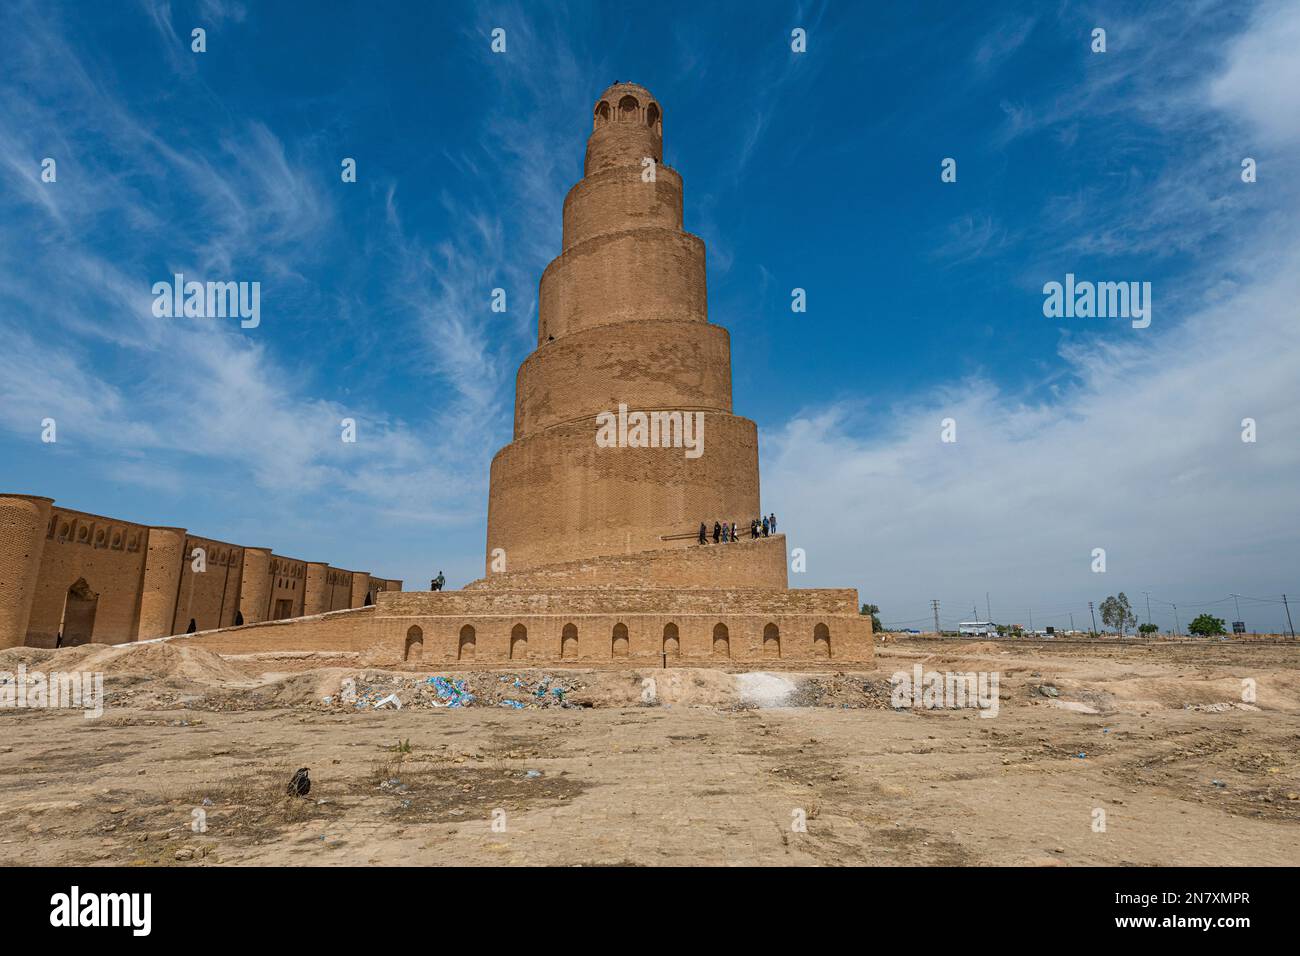 Spiralminarett der Großen Moschee von Samarra, UNESCO-Weltkulturerbe, Samarra, Irak Stockfoto